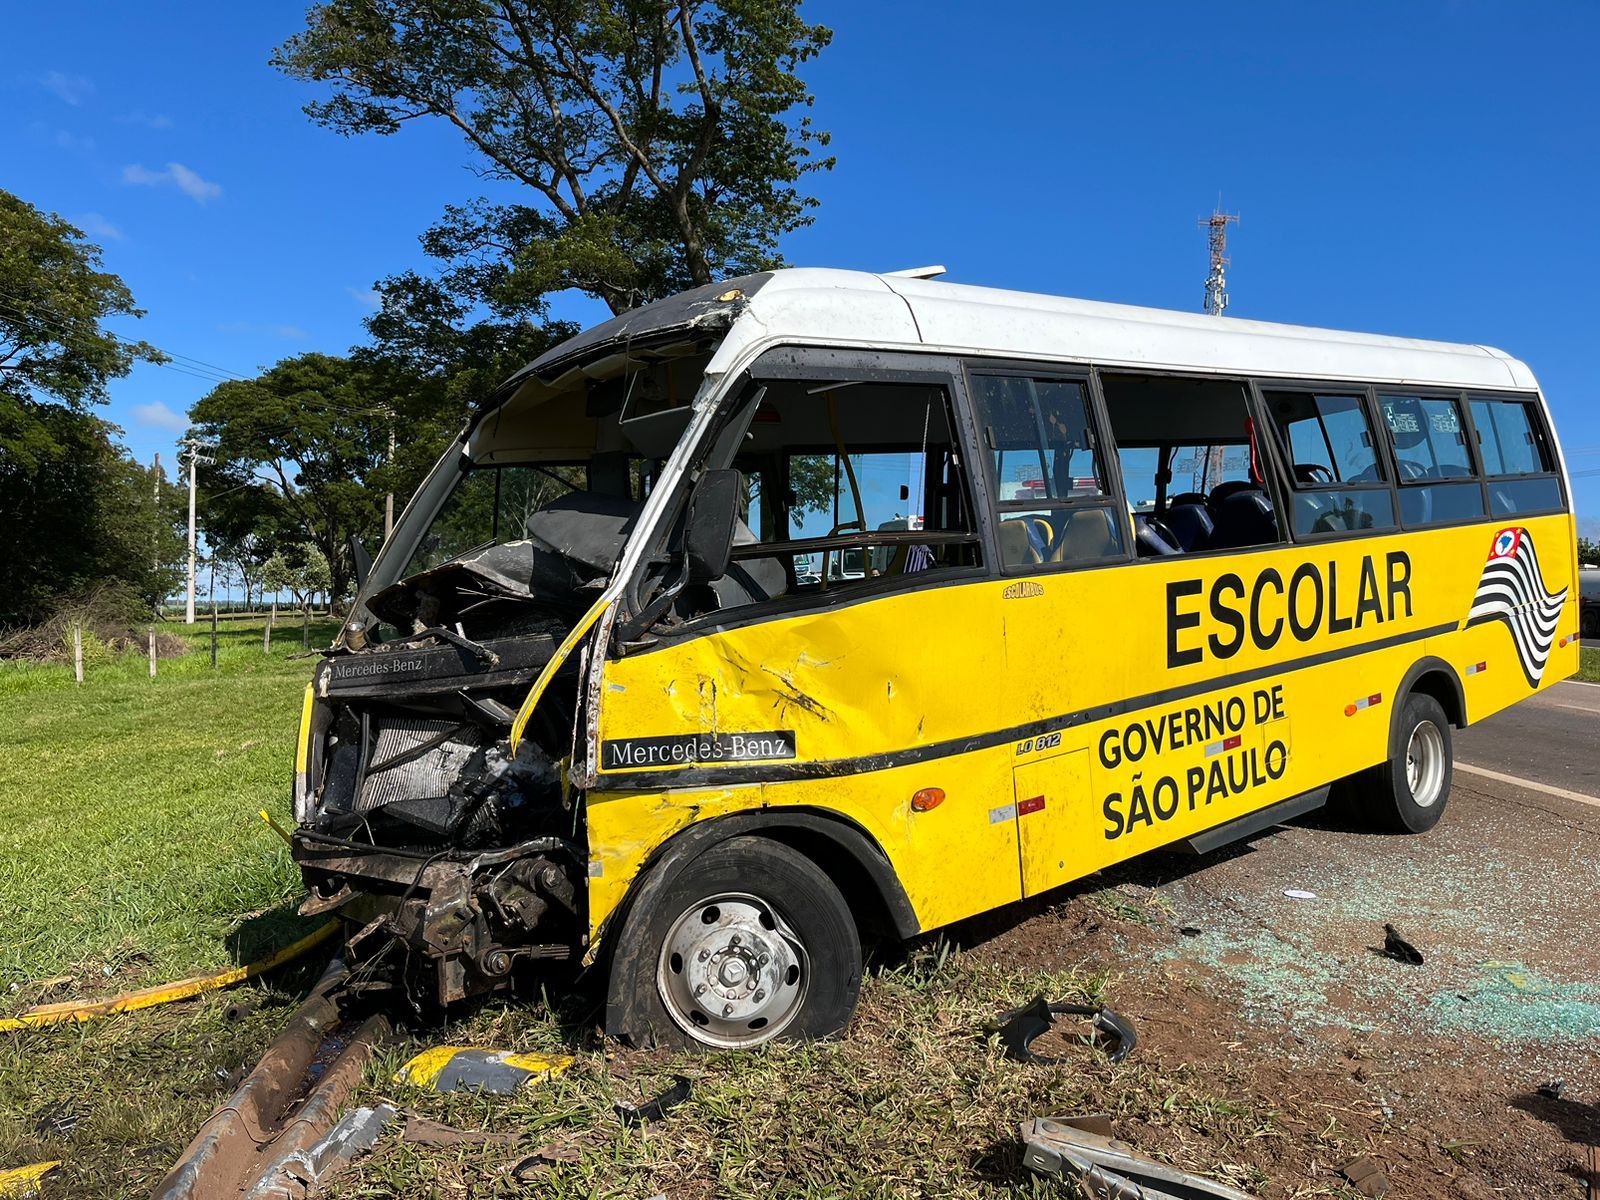 Prefeitura de Bauru abre sindicância para apurar uso irregular de ônibus escolar que levava estudantes e se envolveu em acidente